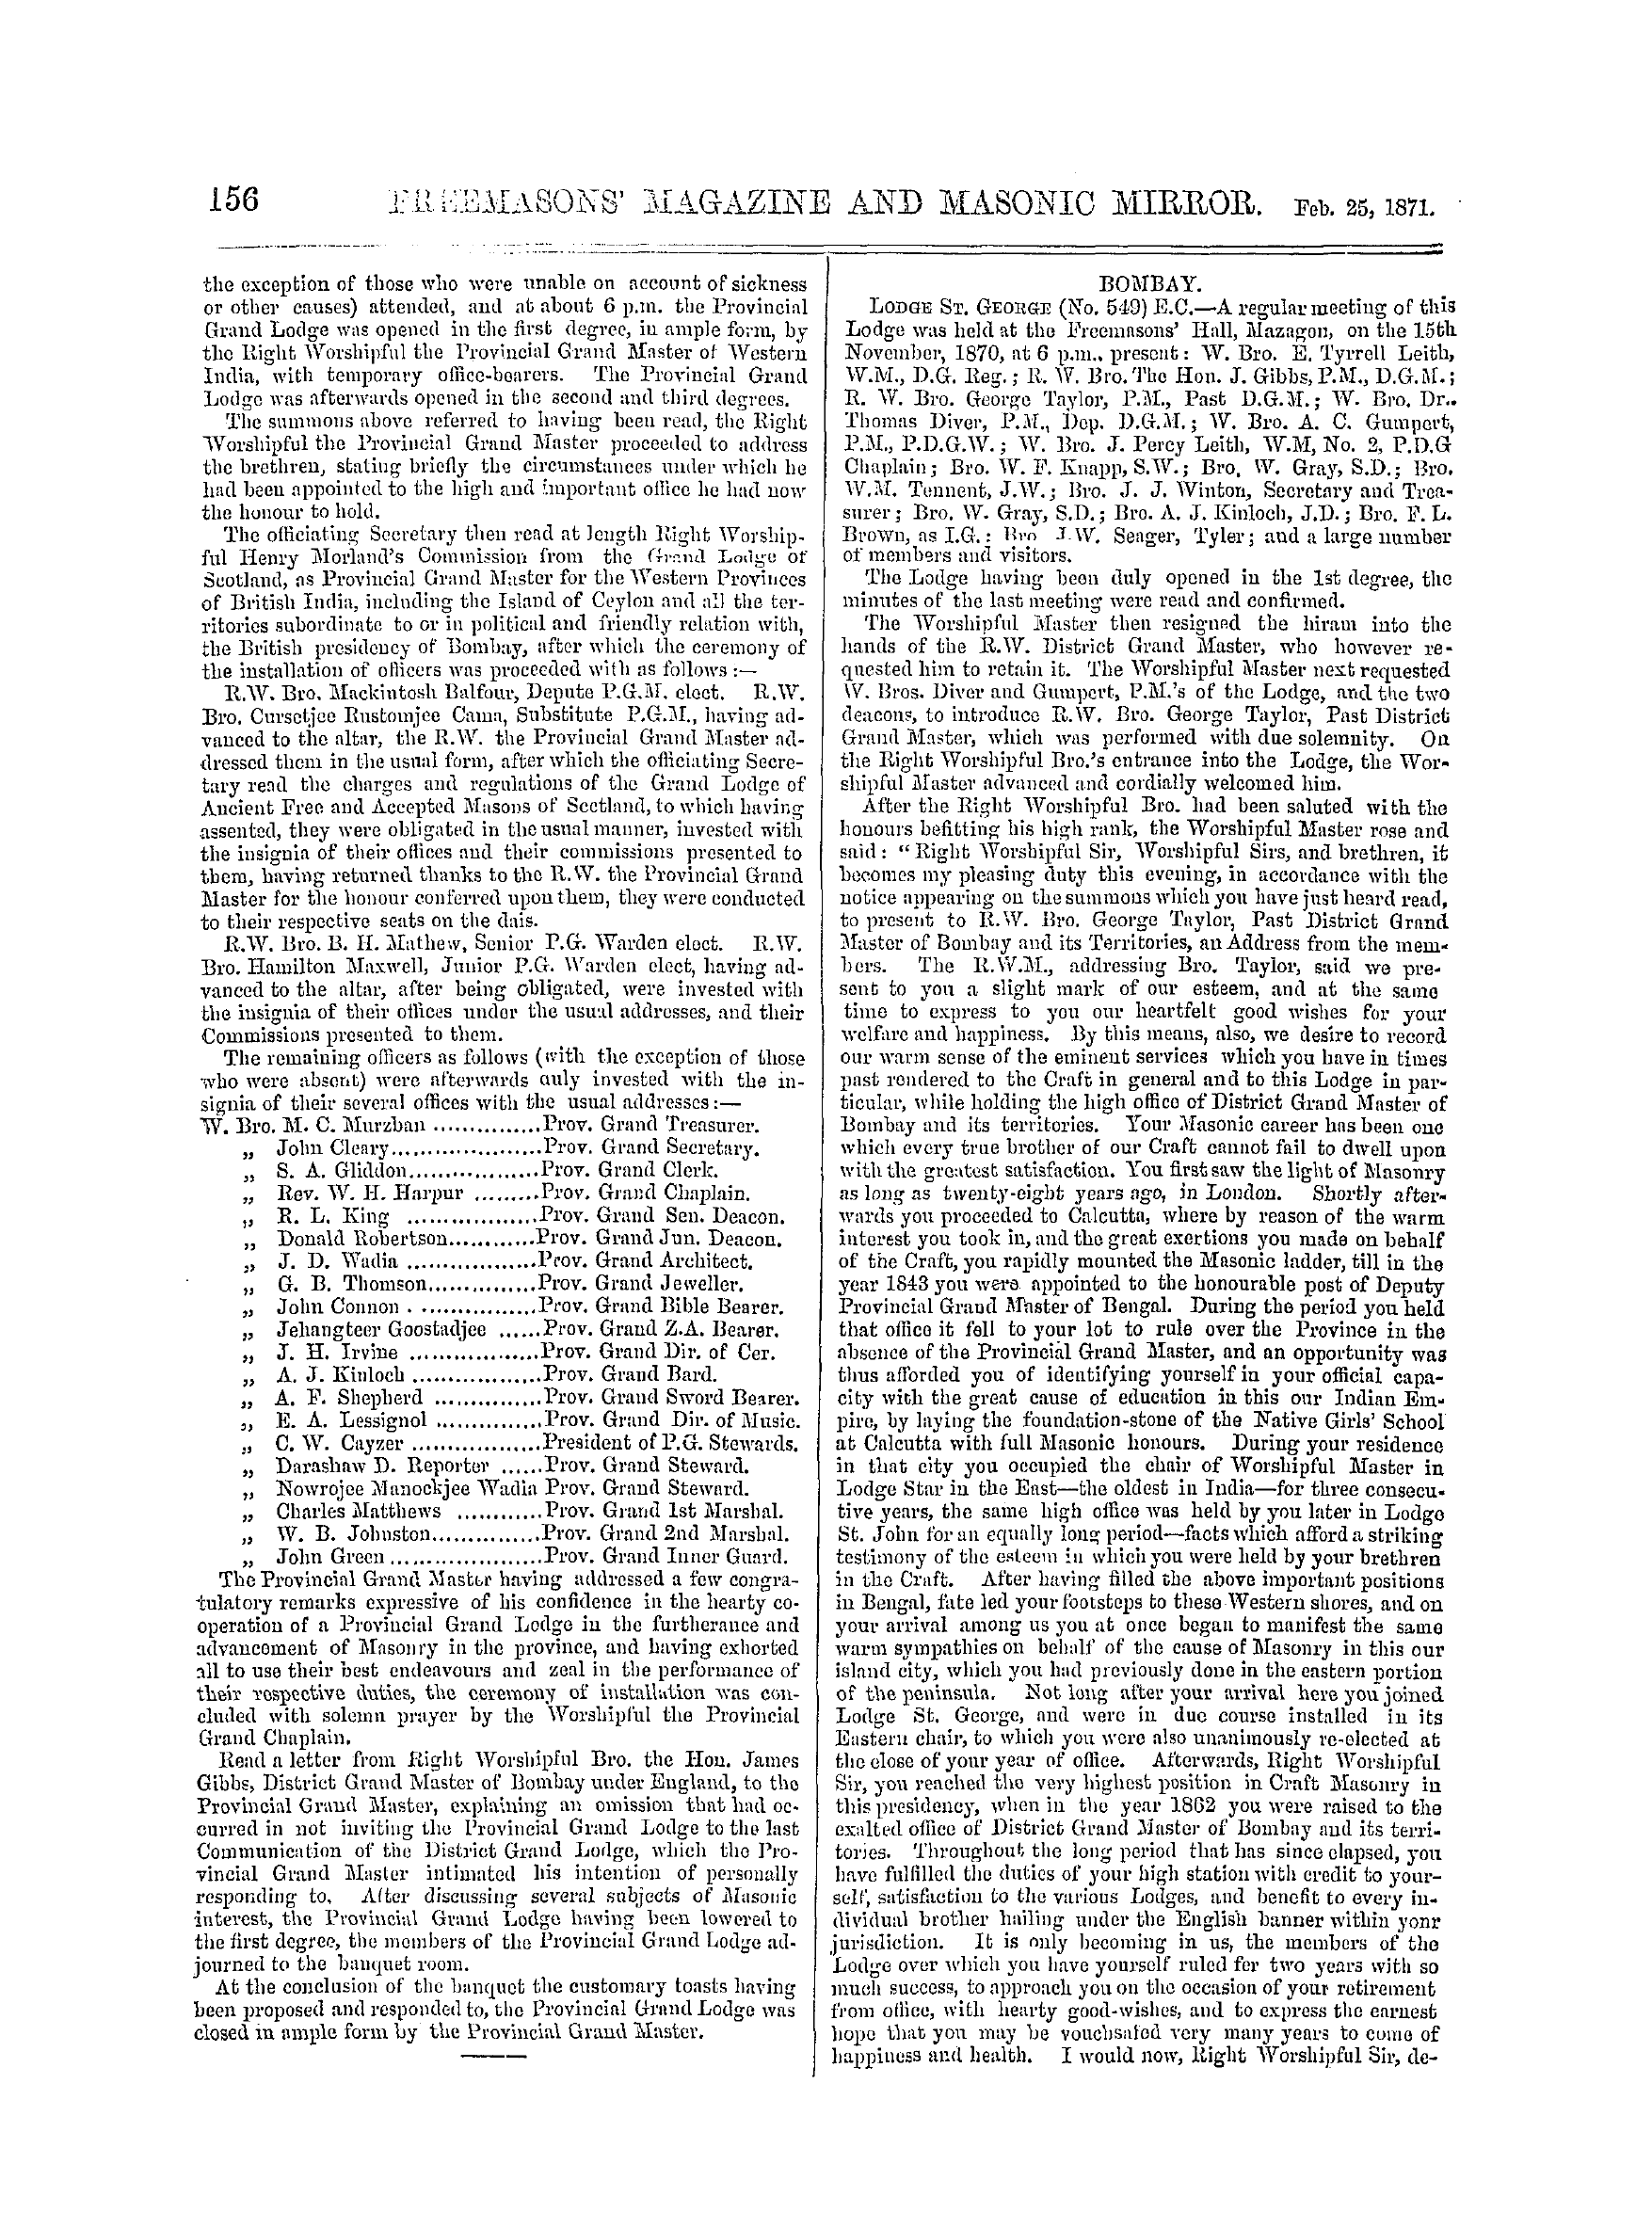 The Freemasons' Monthly Magazine: 1871-02-25: 16